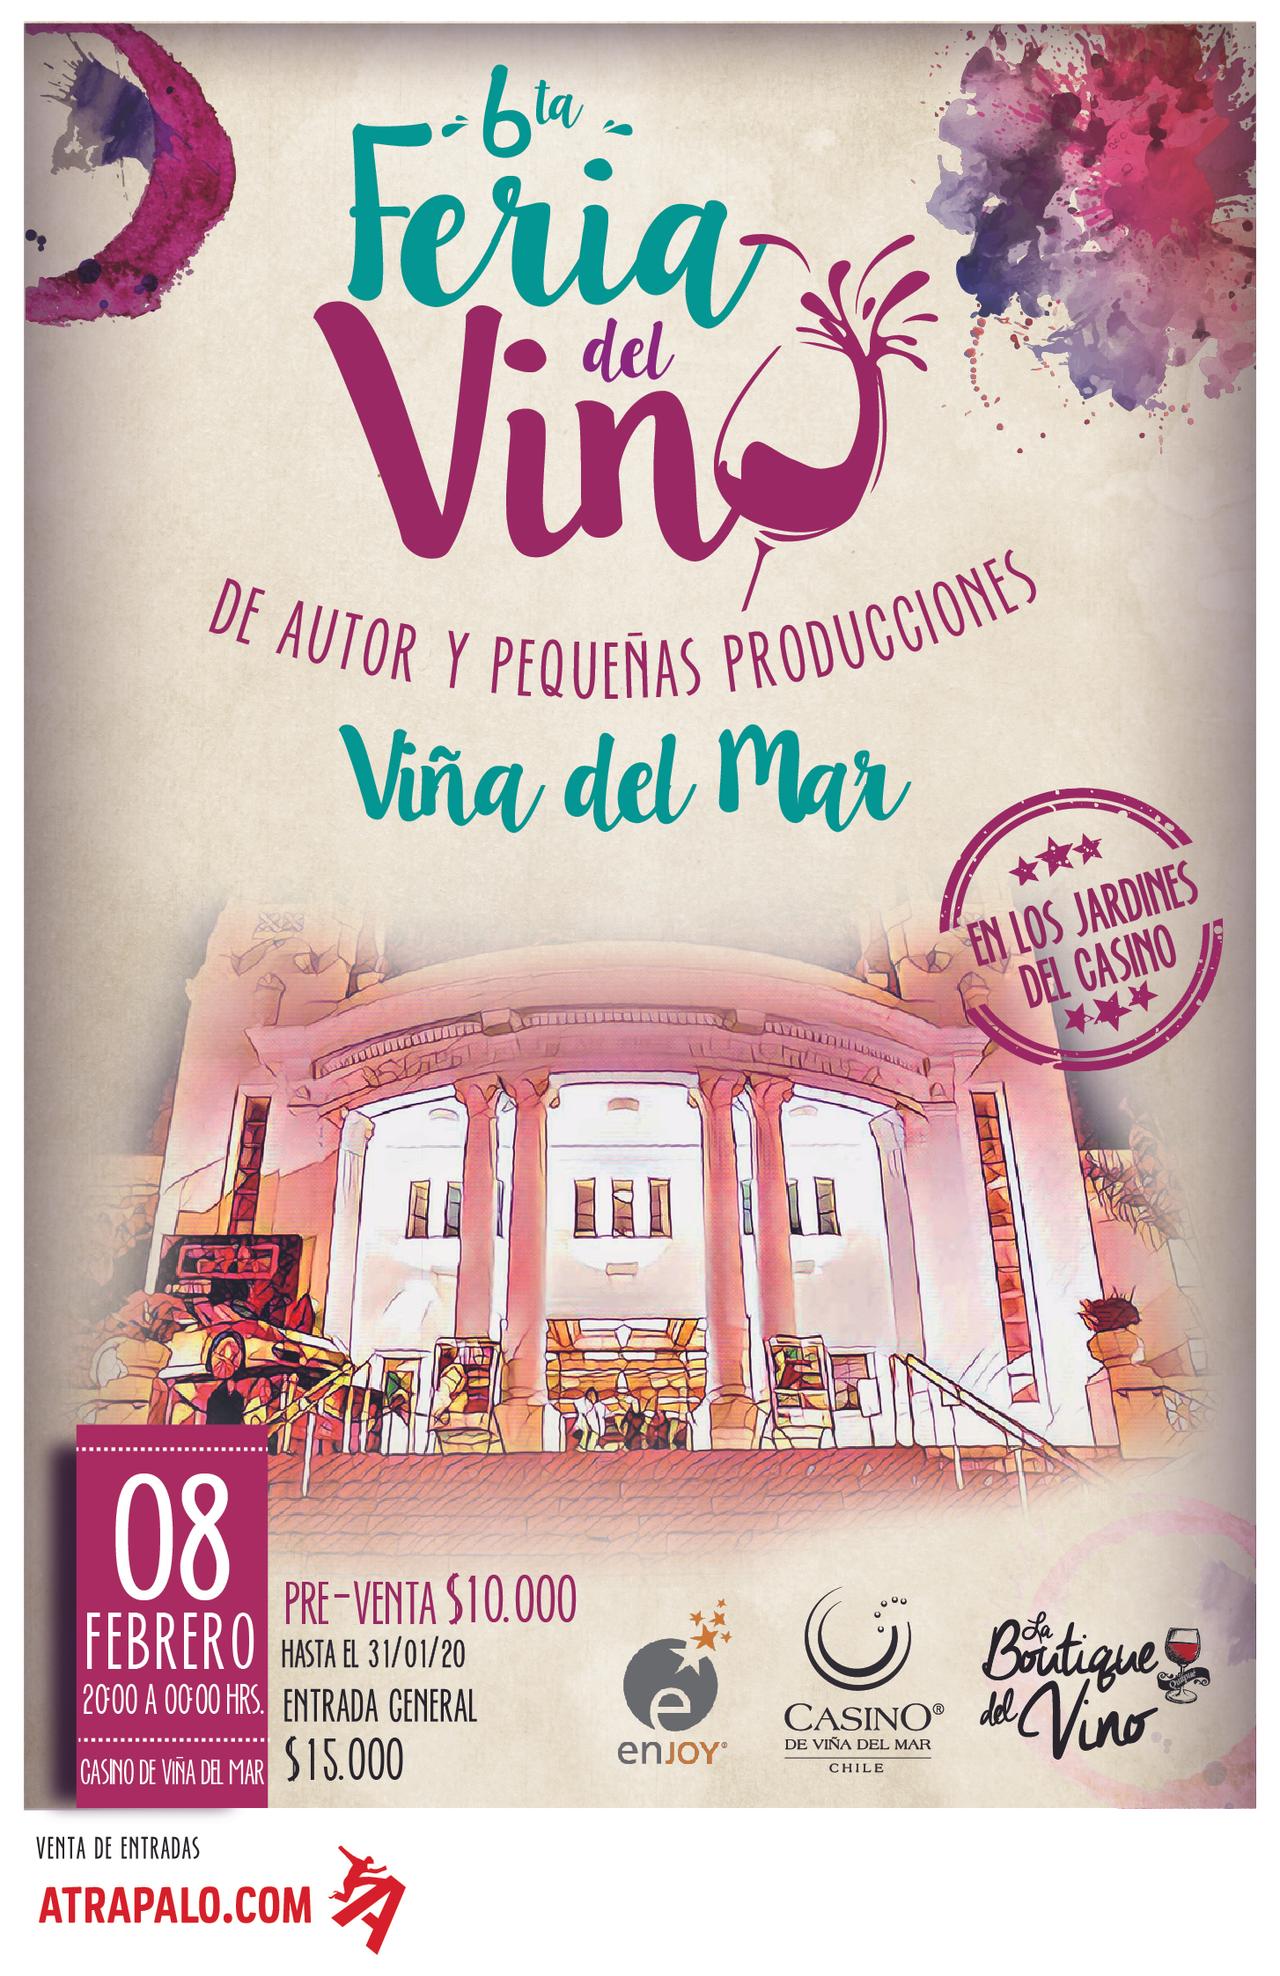 6ta Feria del Vino de Autor - Enjoy Viña del Mar